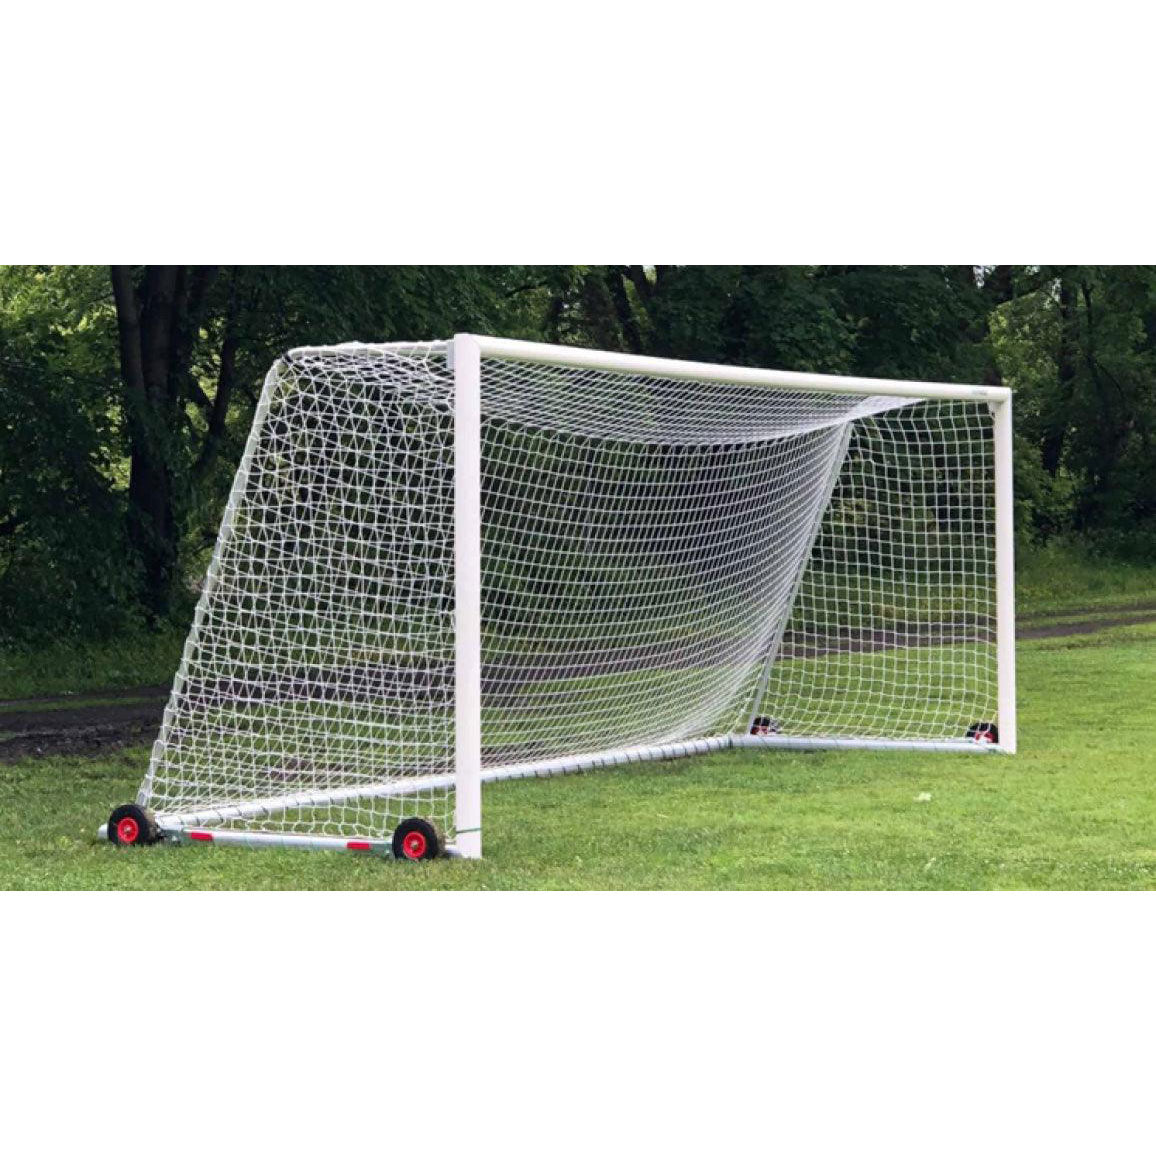 Portable Safegoals Soccer Goal